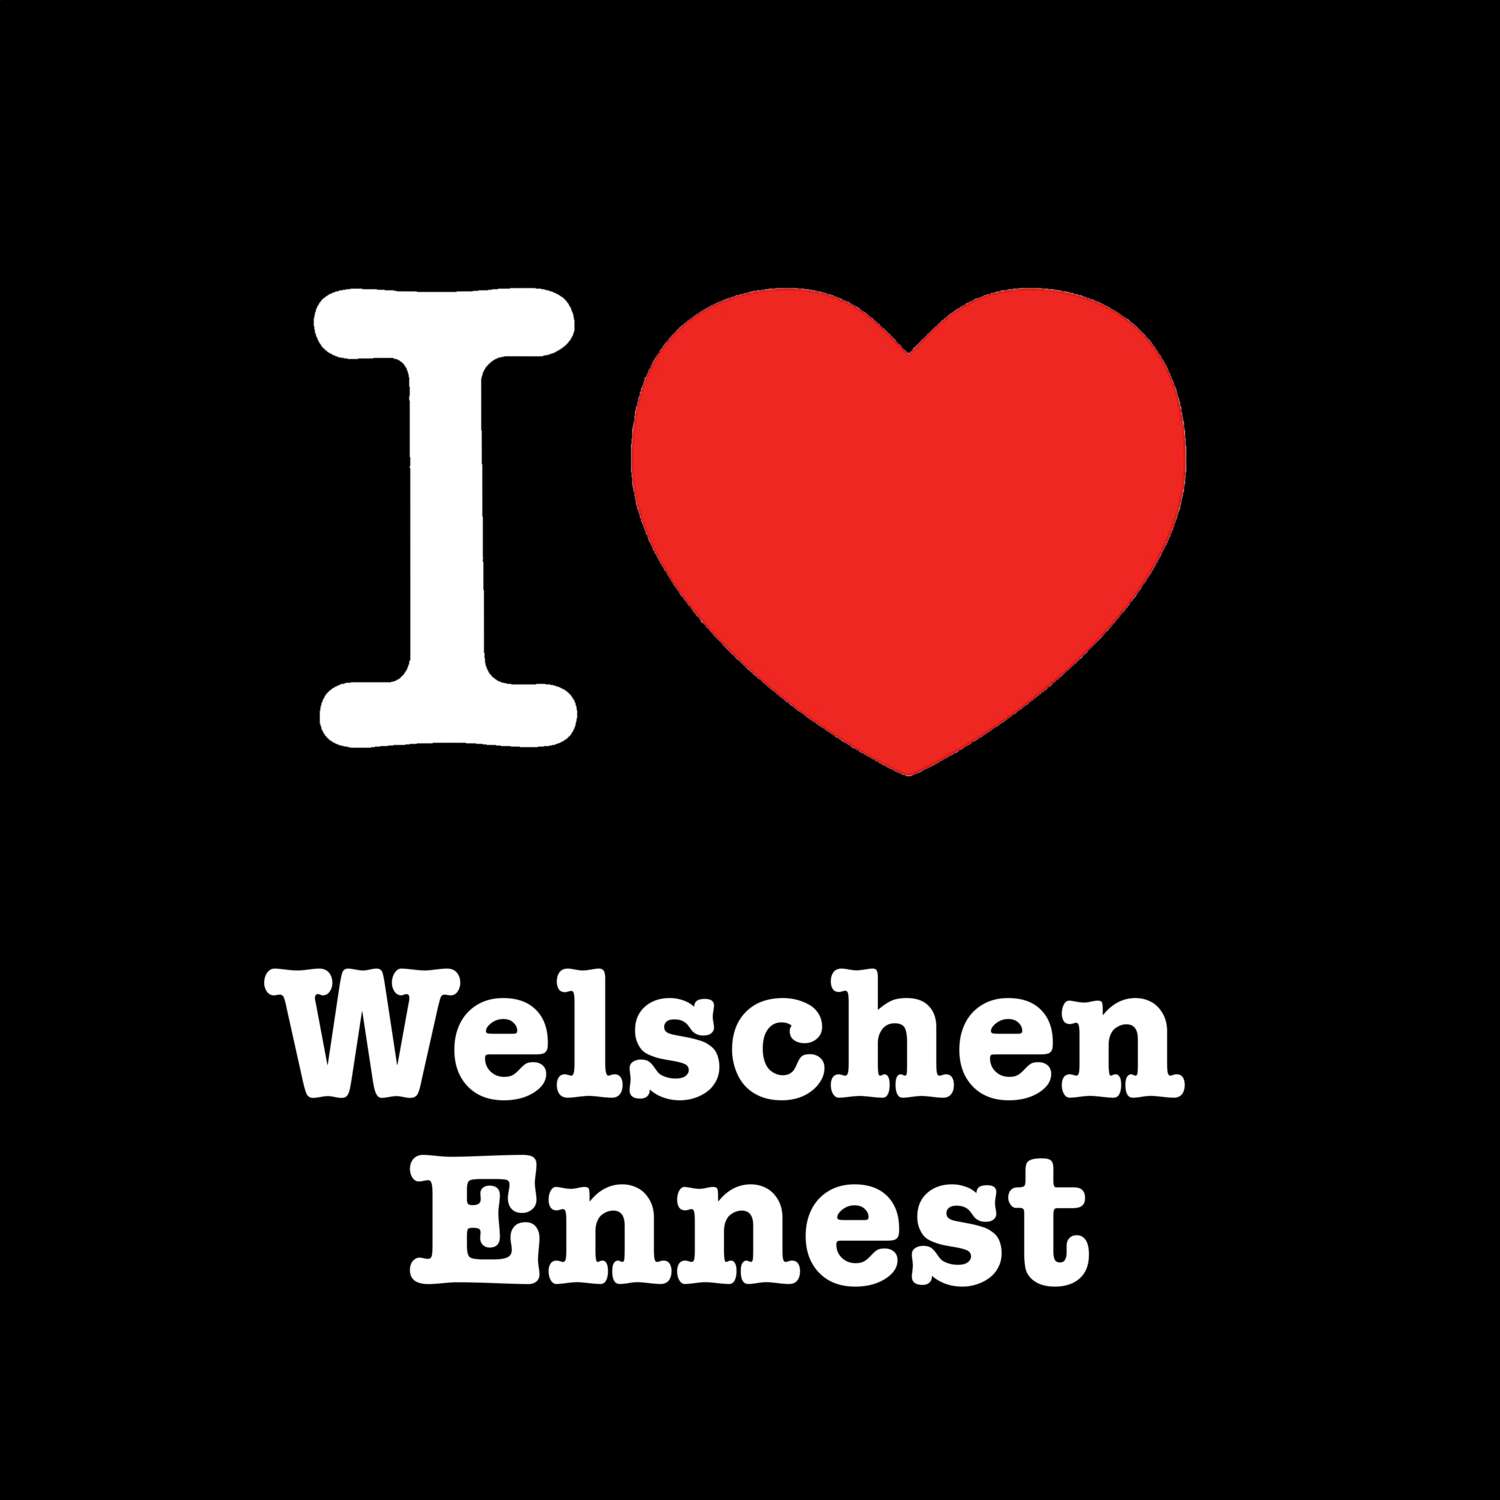 Welschen Ennest T-Shirt »I love«